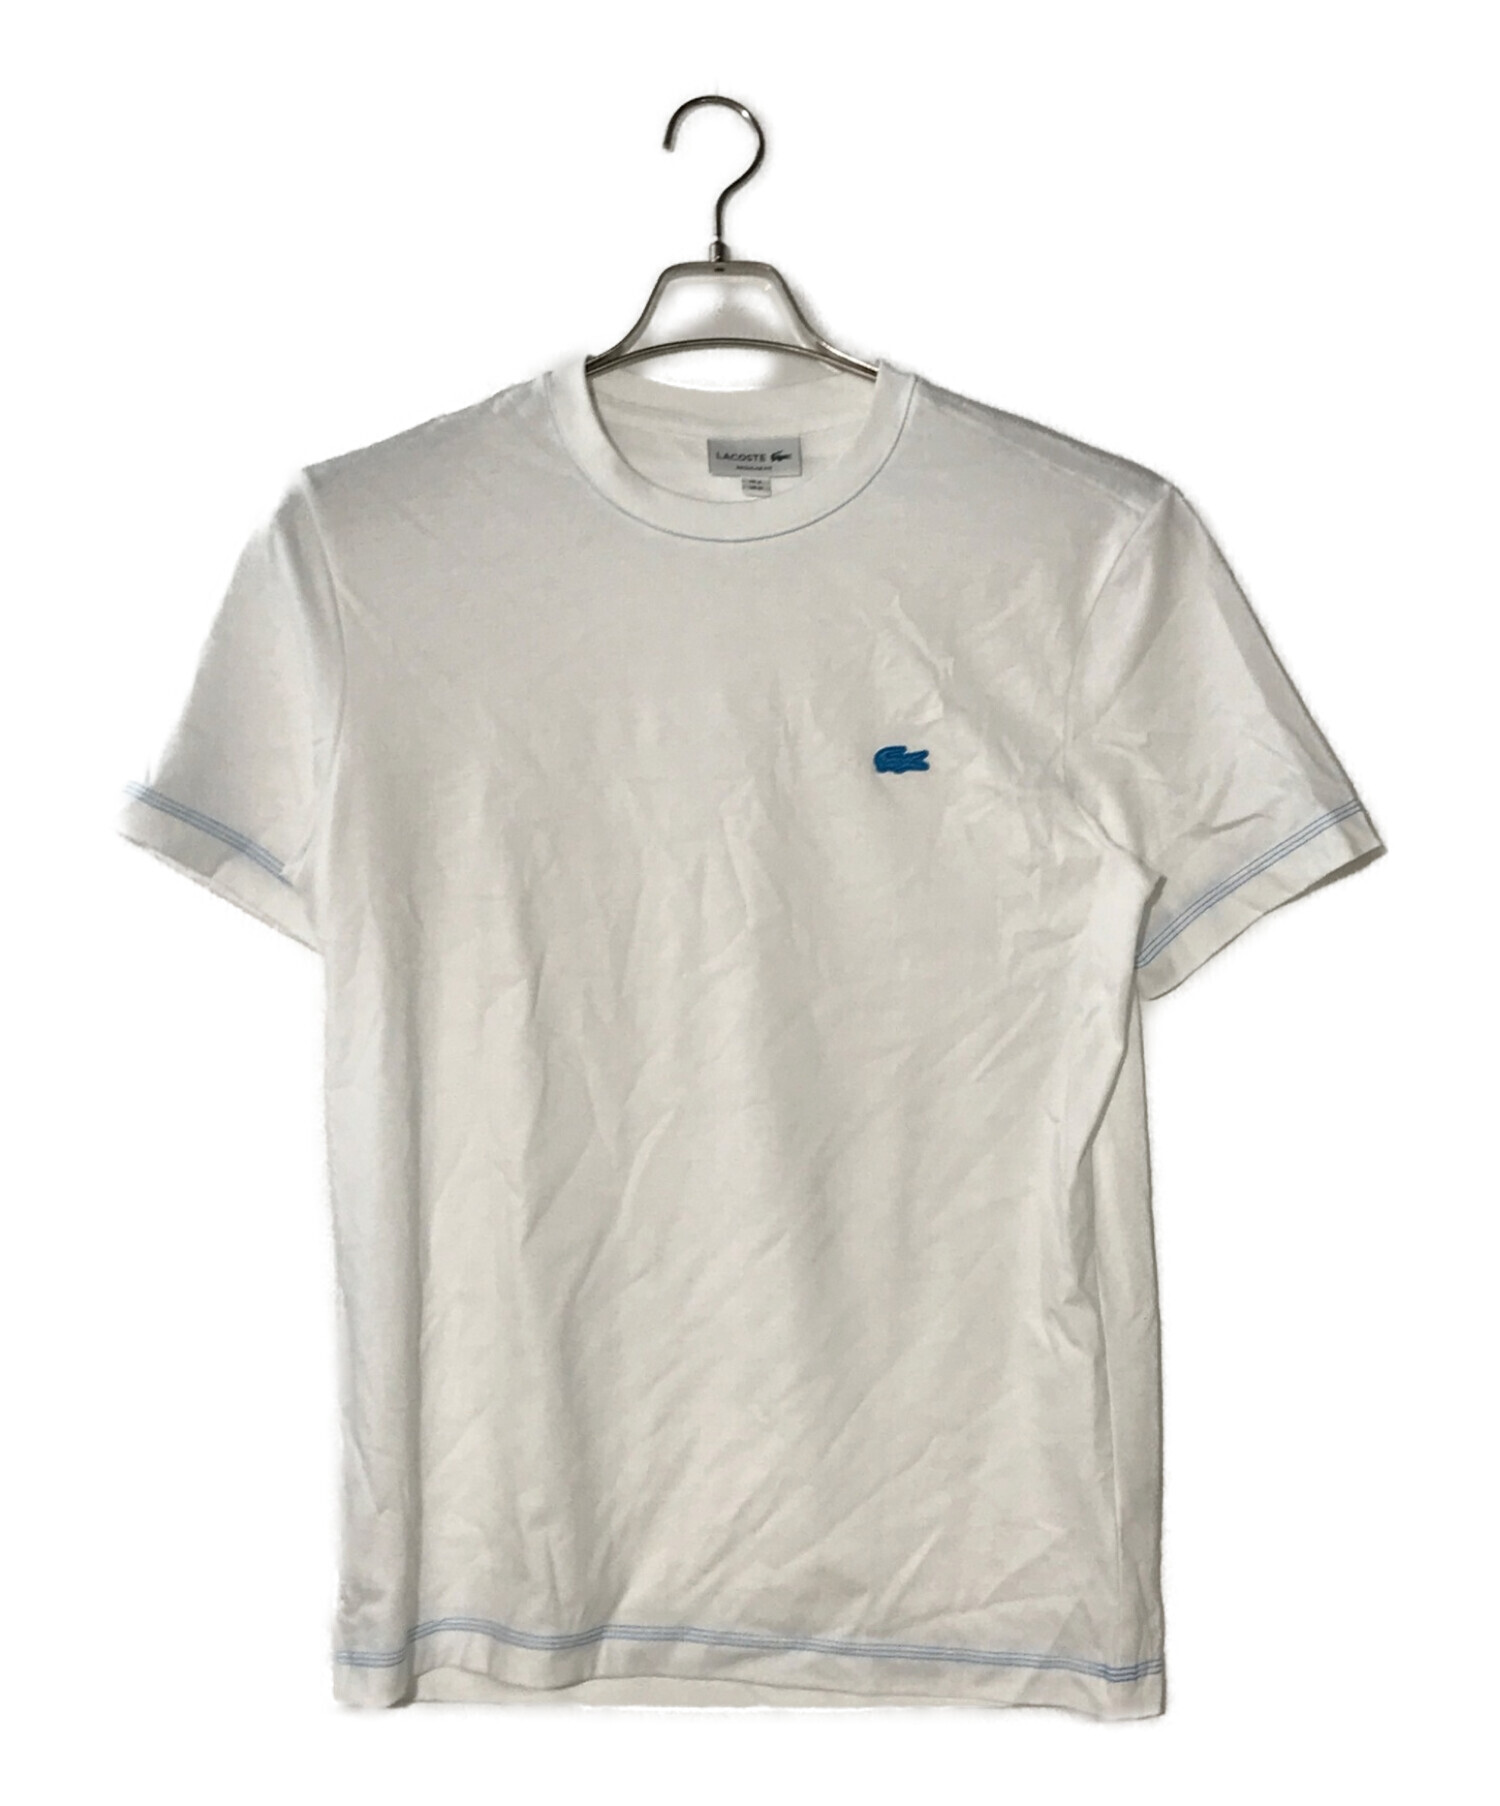 LACOSTE (ラコステ) ネオンカラーステッチワンポイントロゴTシャツ ホワイト サイズ:M